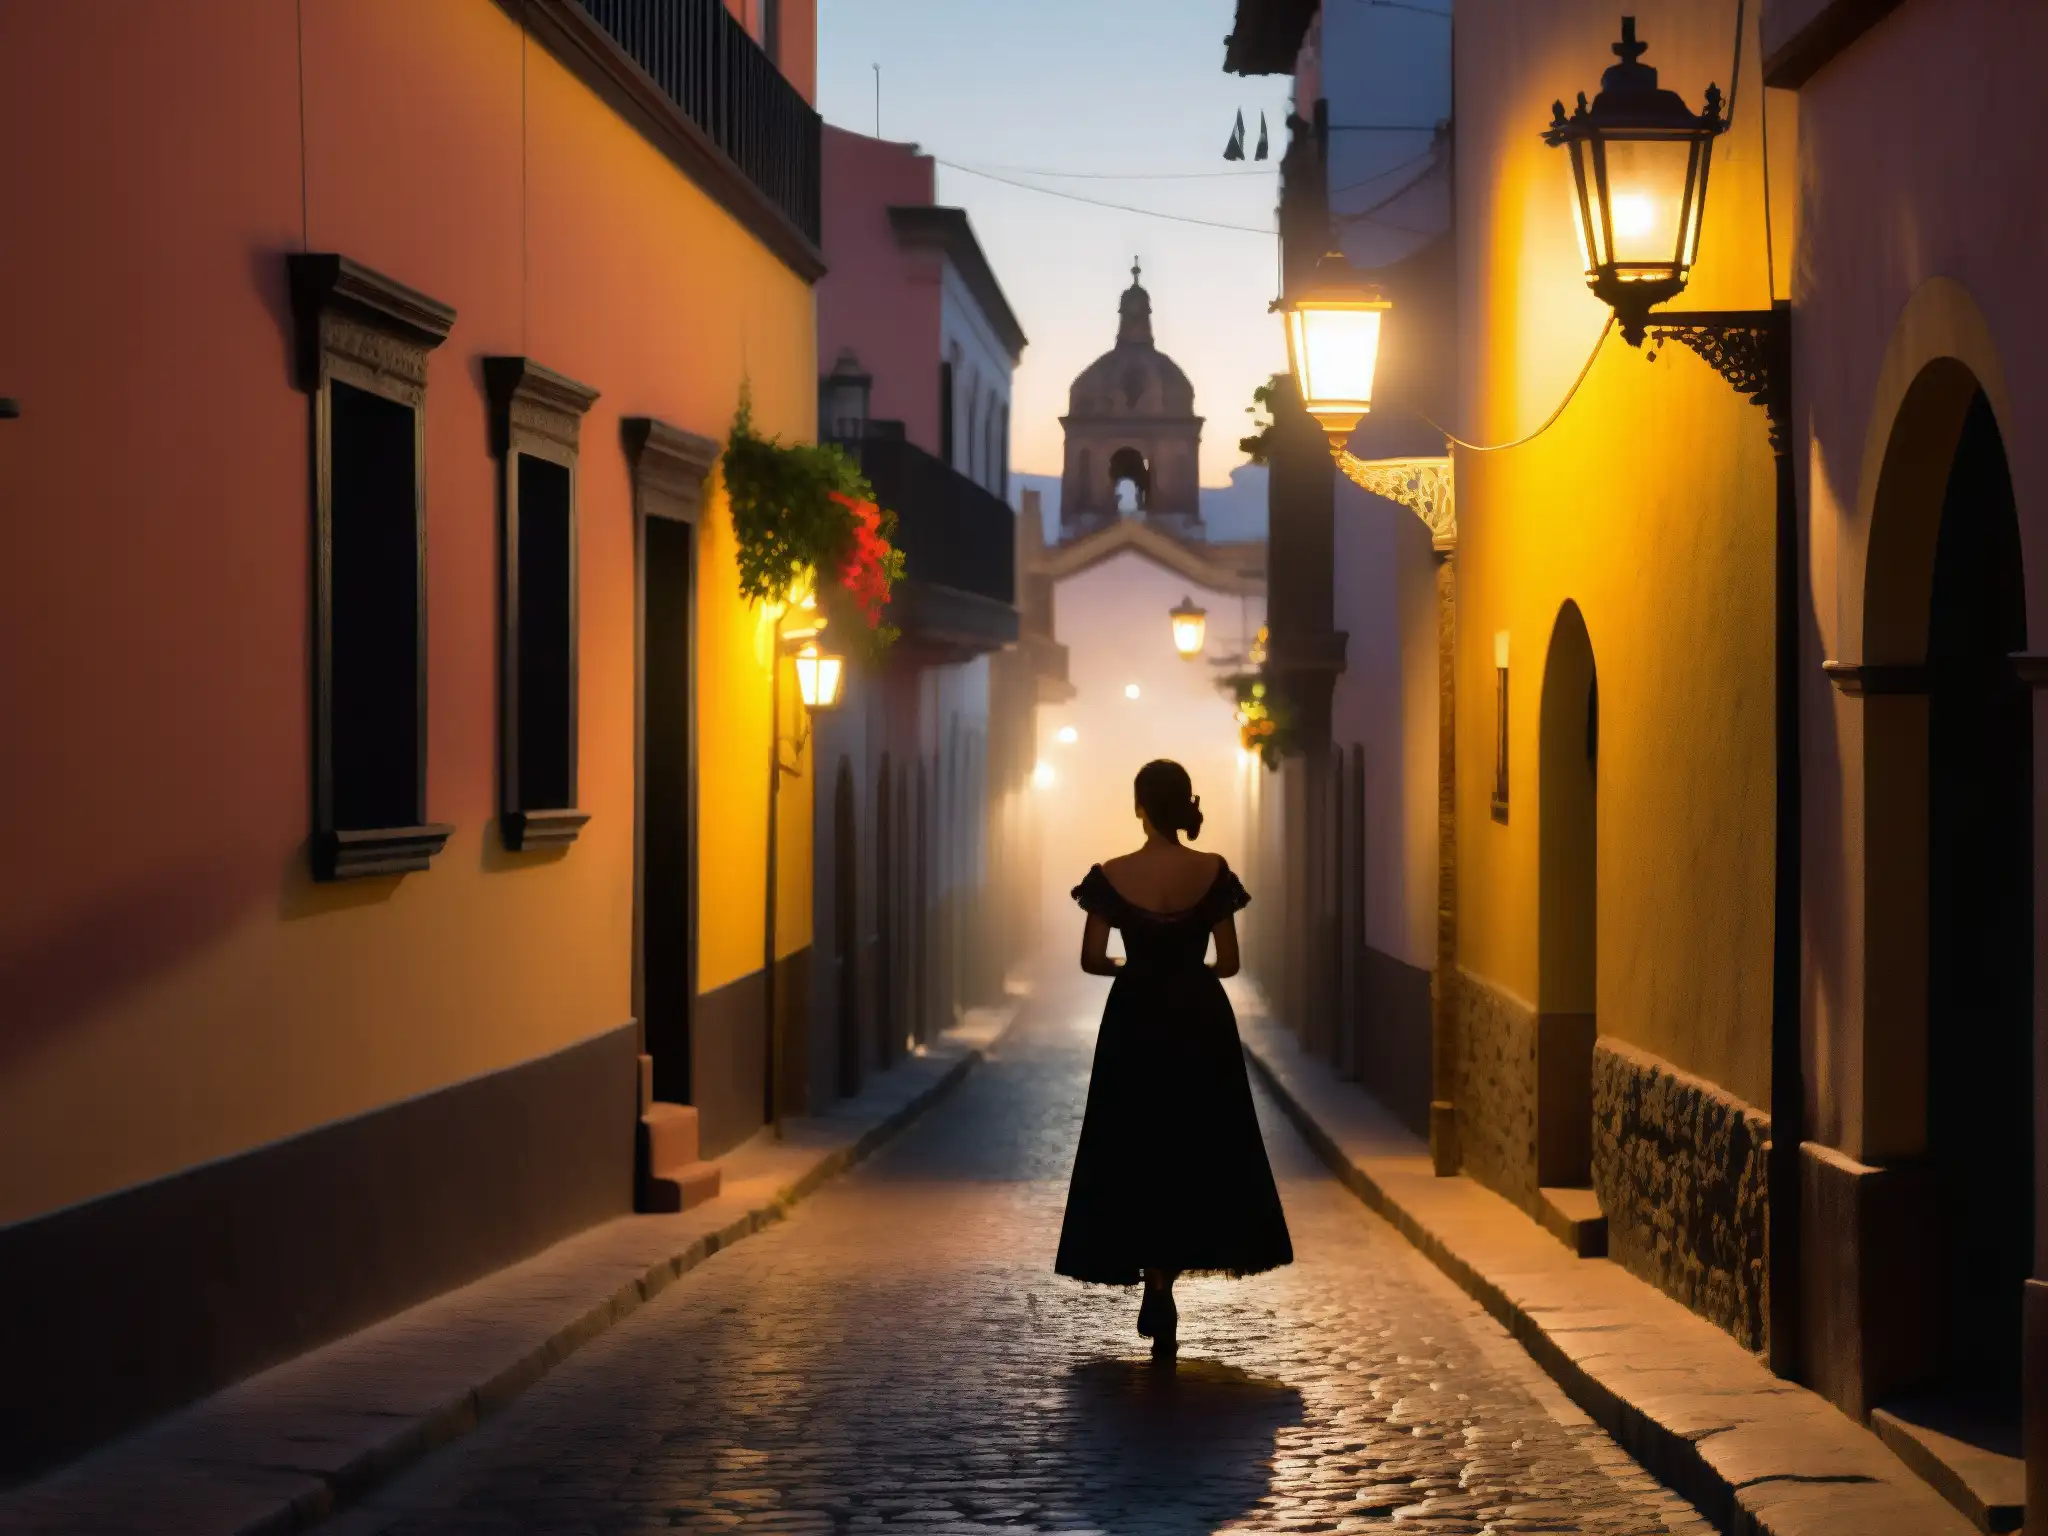 En la misteriosa y neblinosa calle de Querétaro, una figura femenina evoca la leyenda de la Zacatecana en un crimen pasional